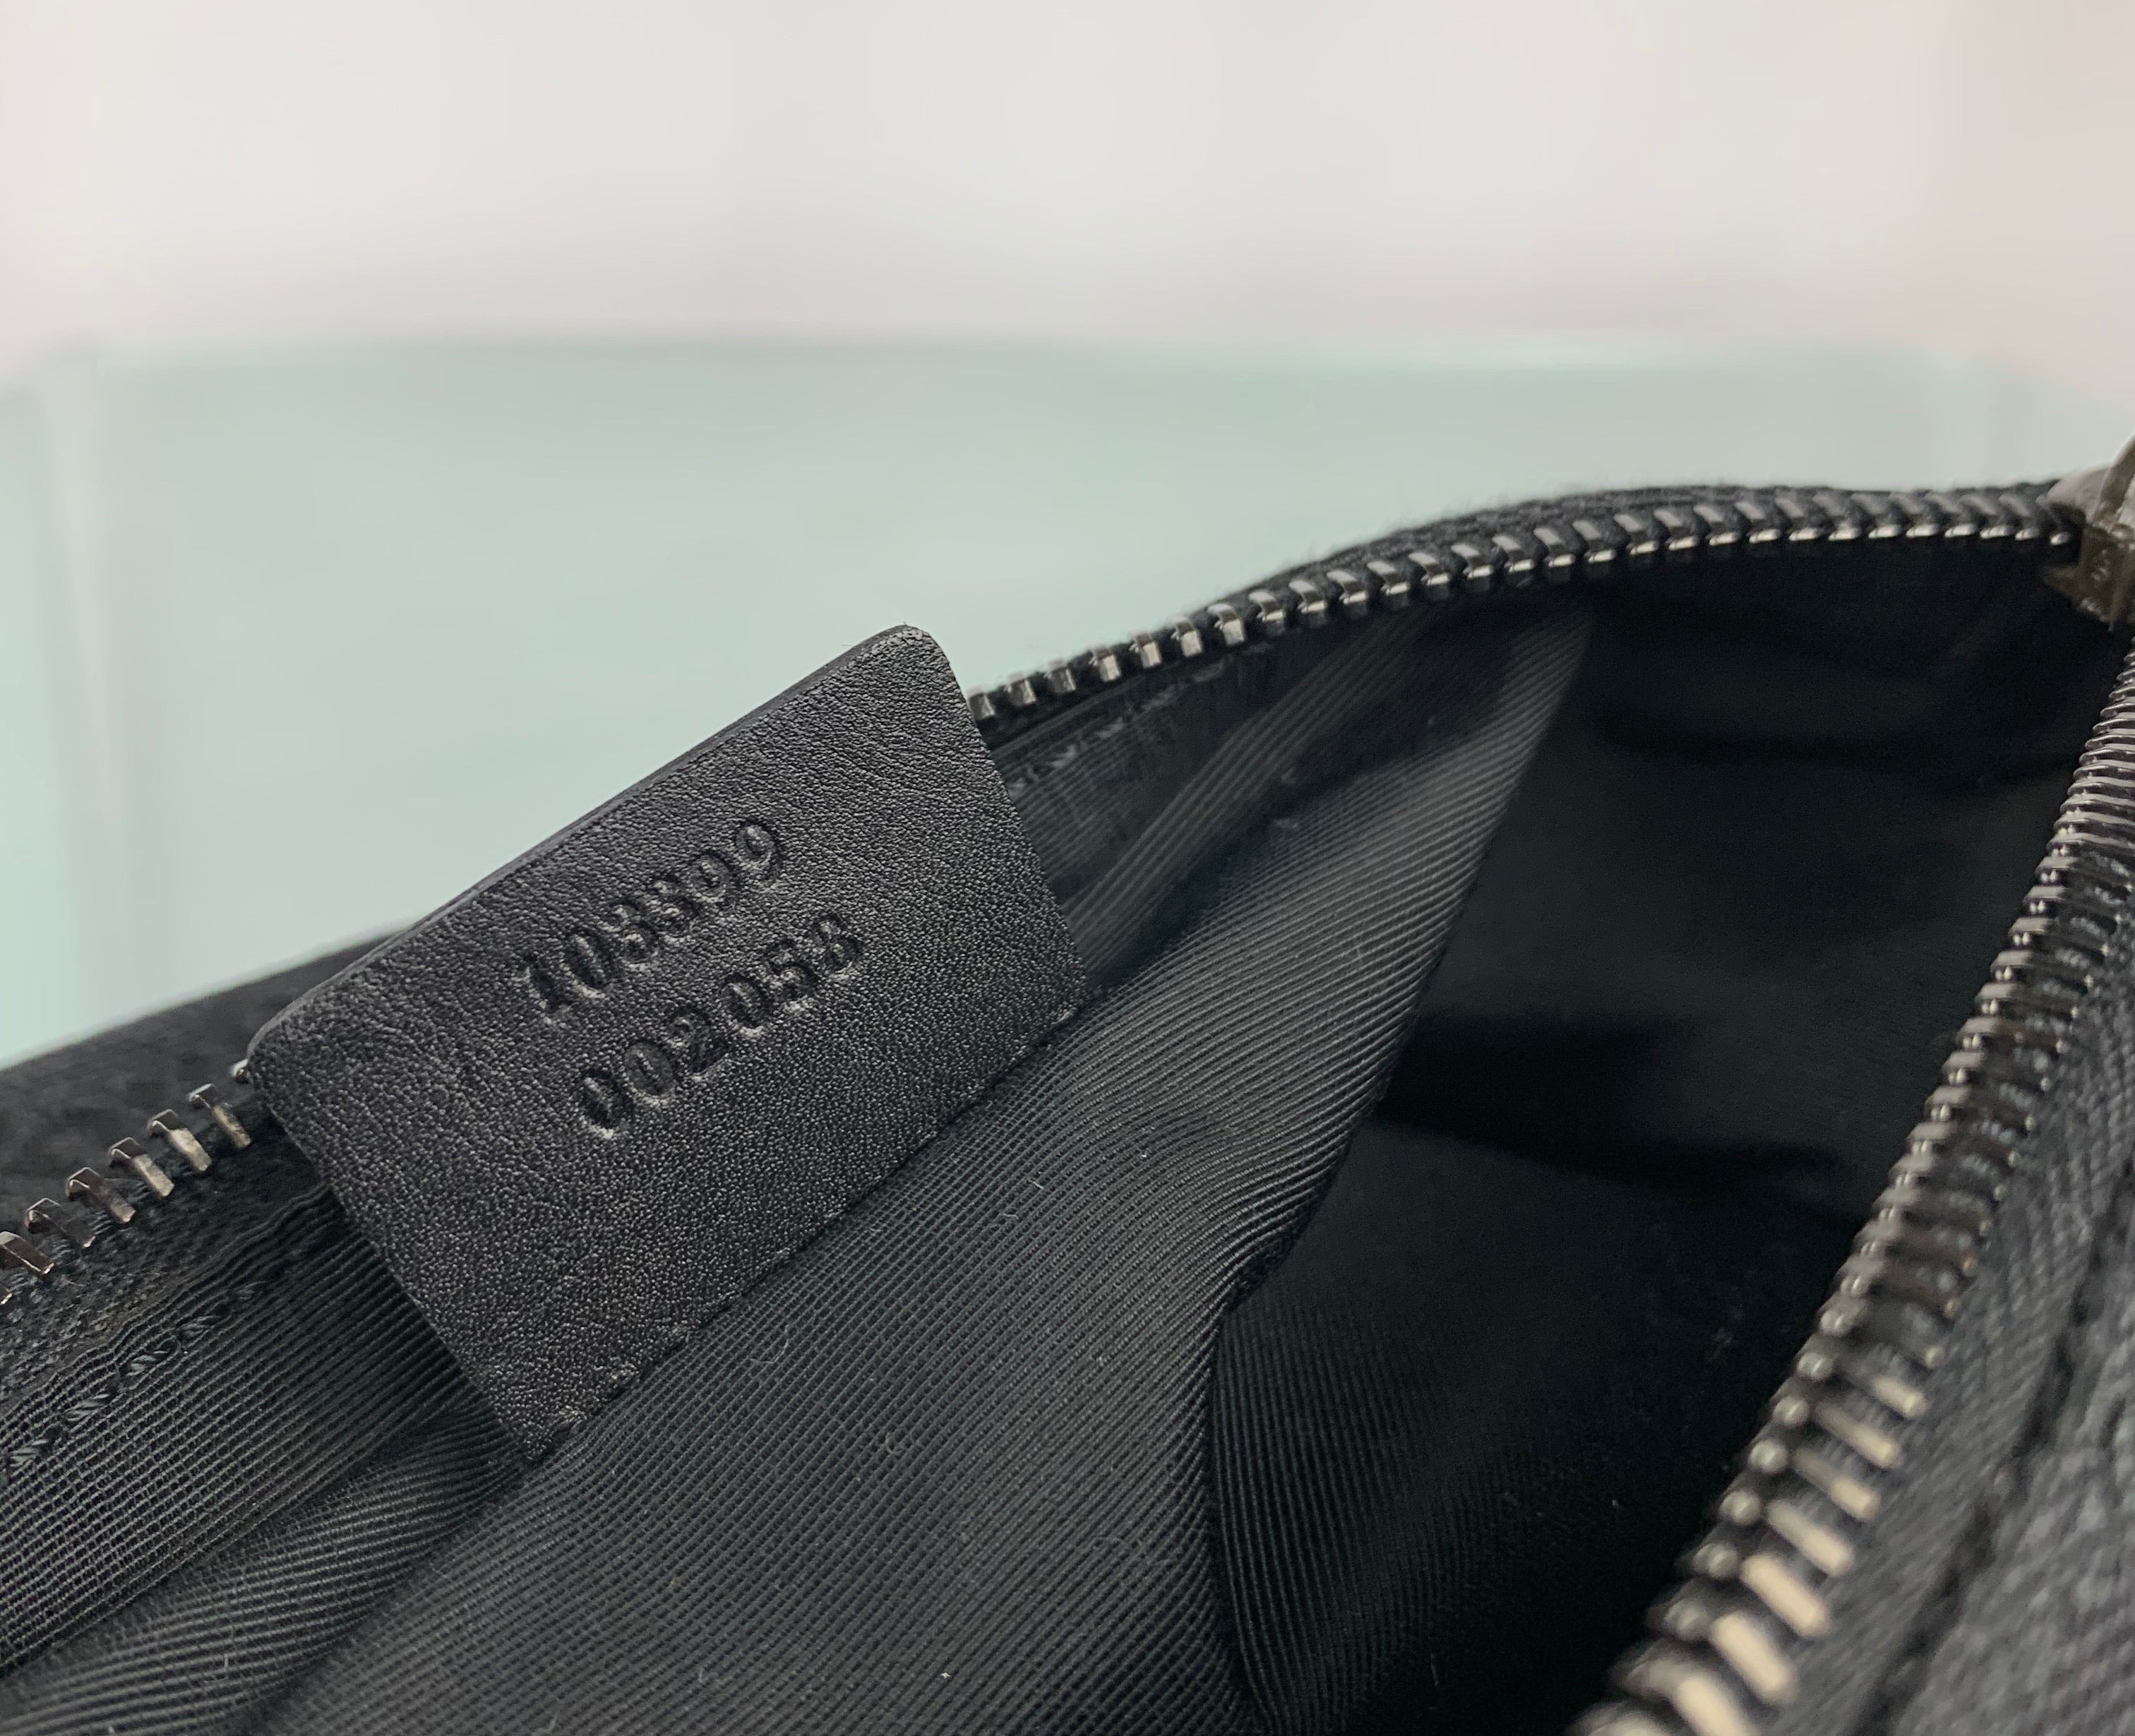 Gucci GUCCI Mini Pochette Monogram black bag / 103399